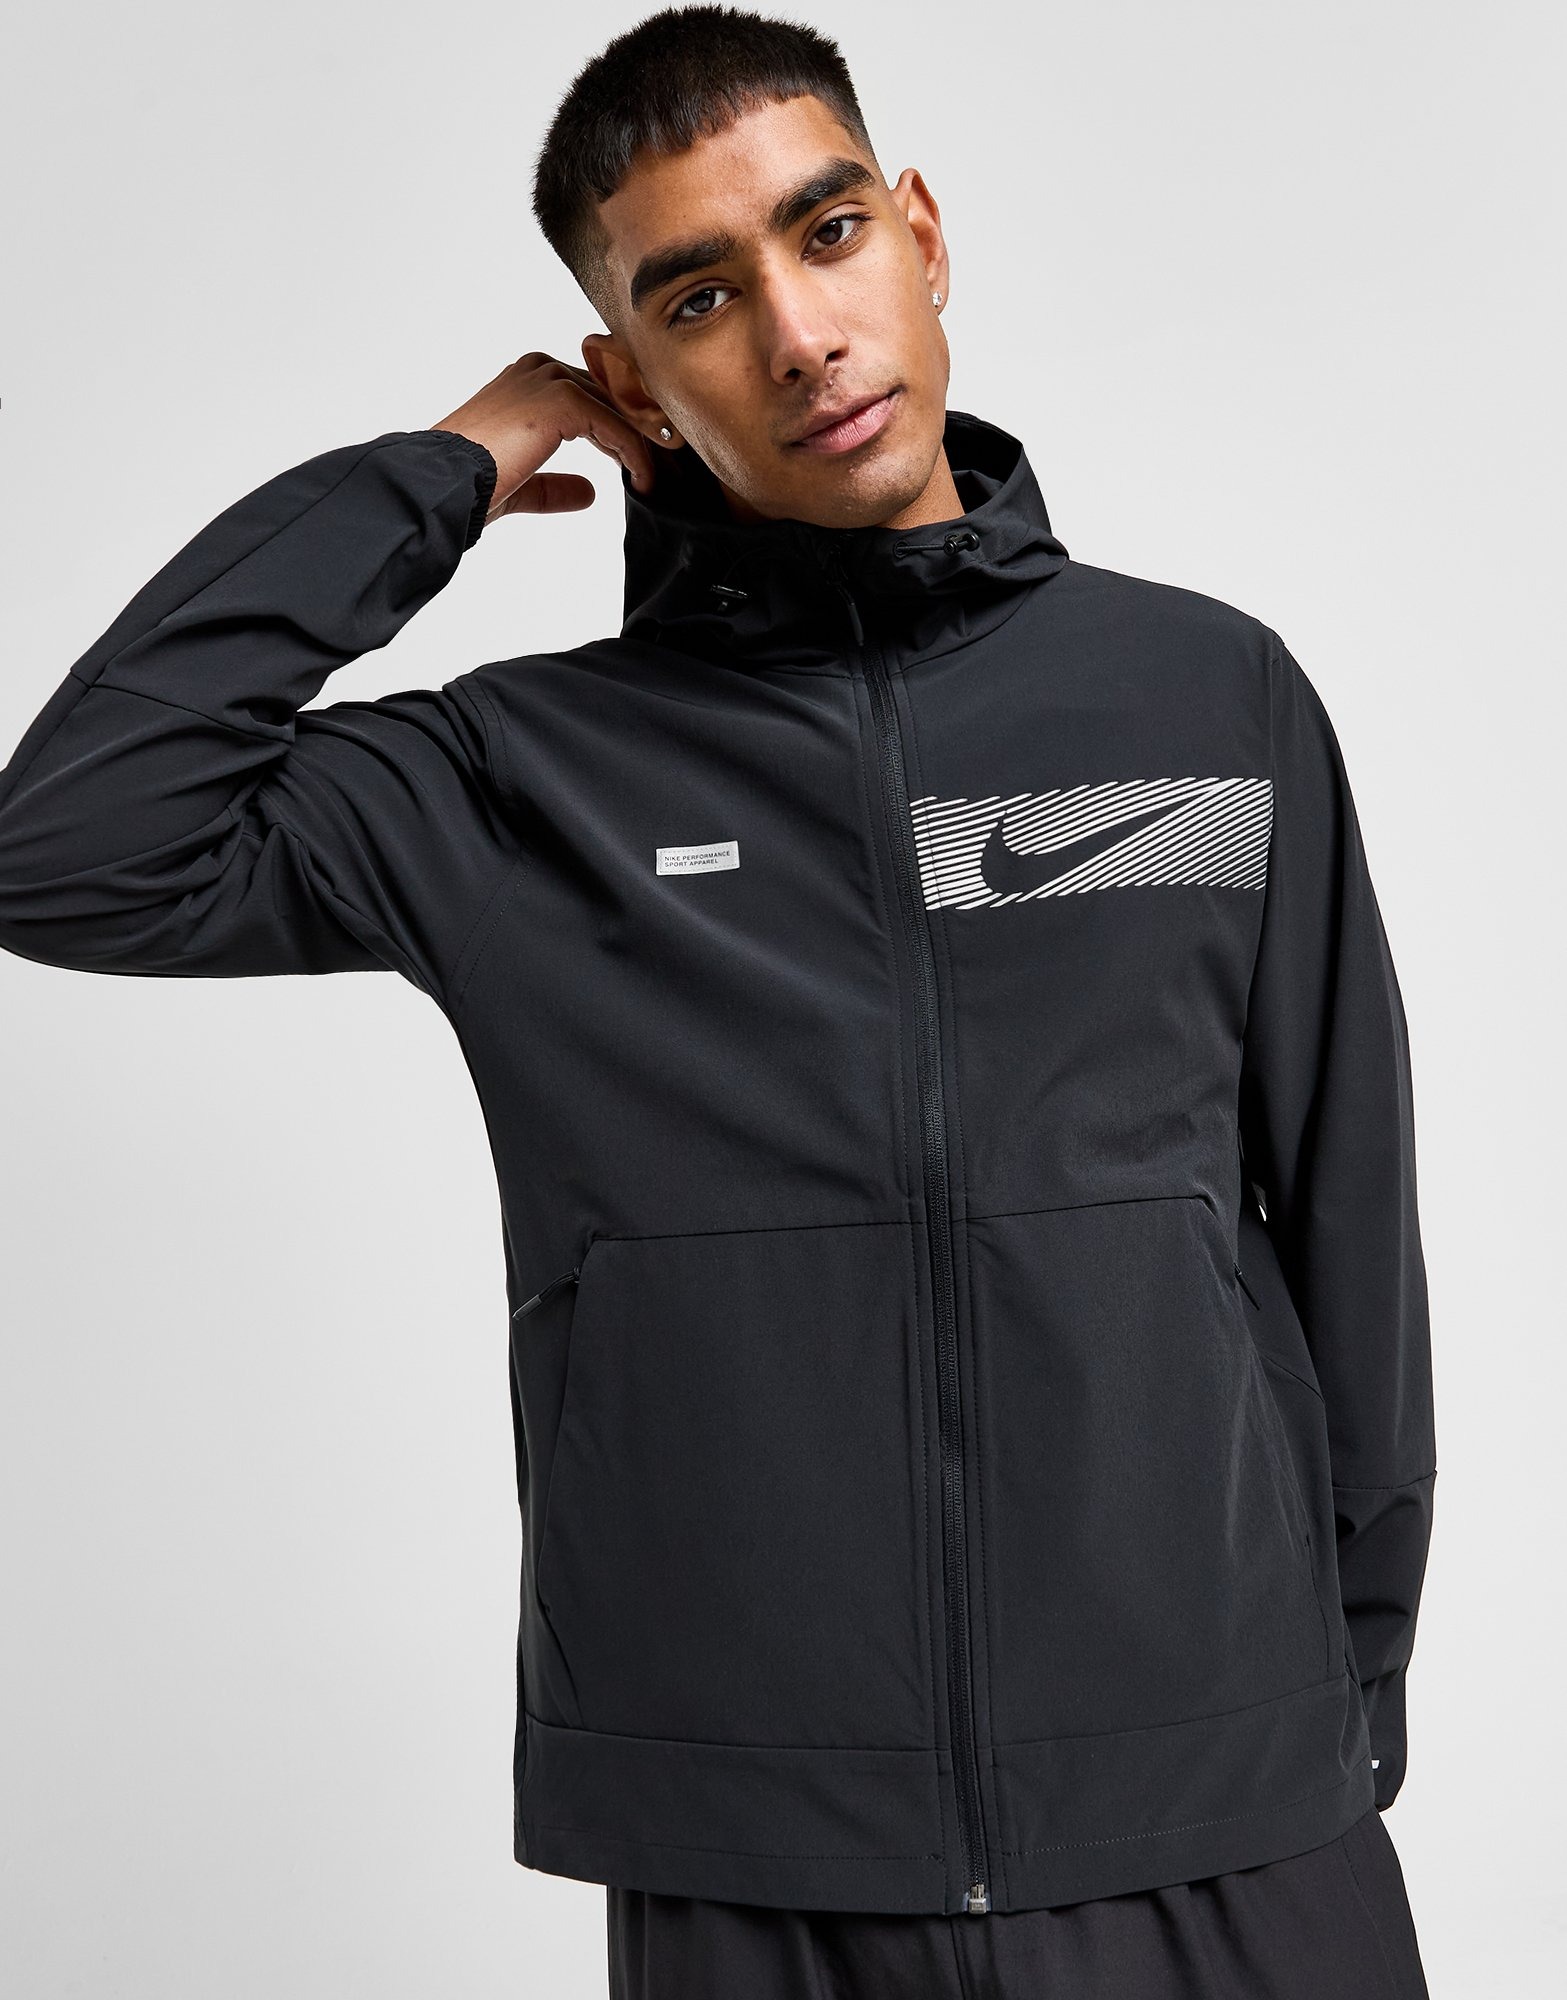 Black Nike Flash Unlimited Jacket | JD Sports UK